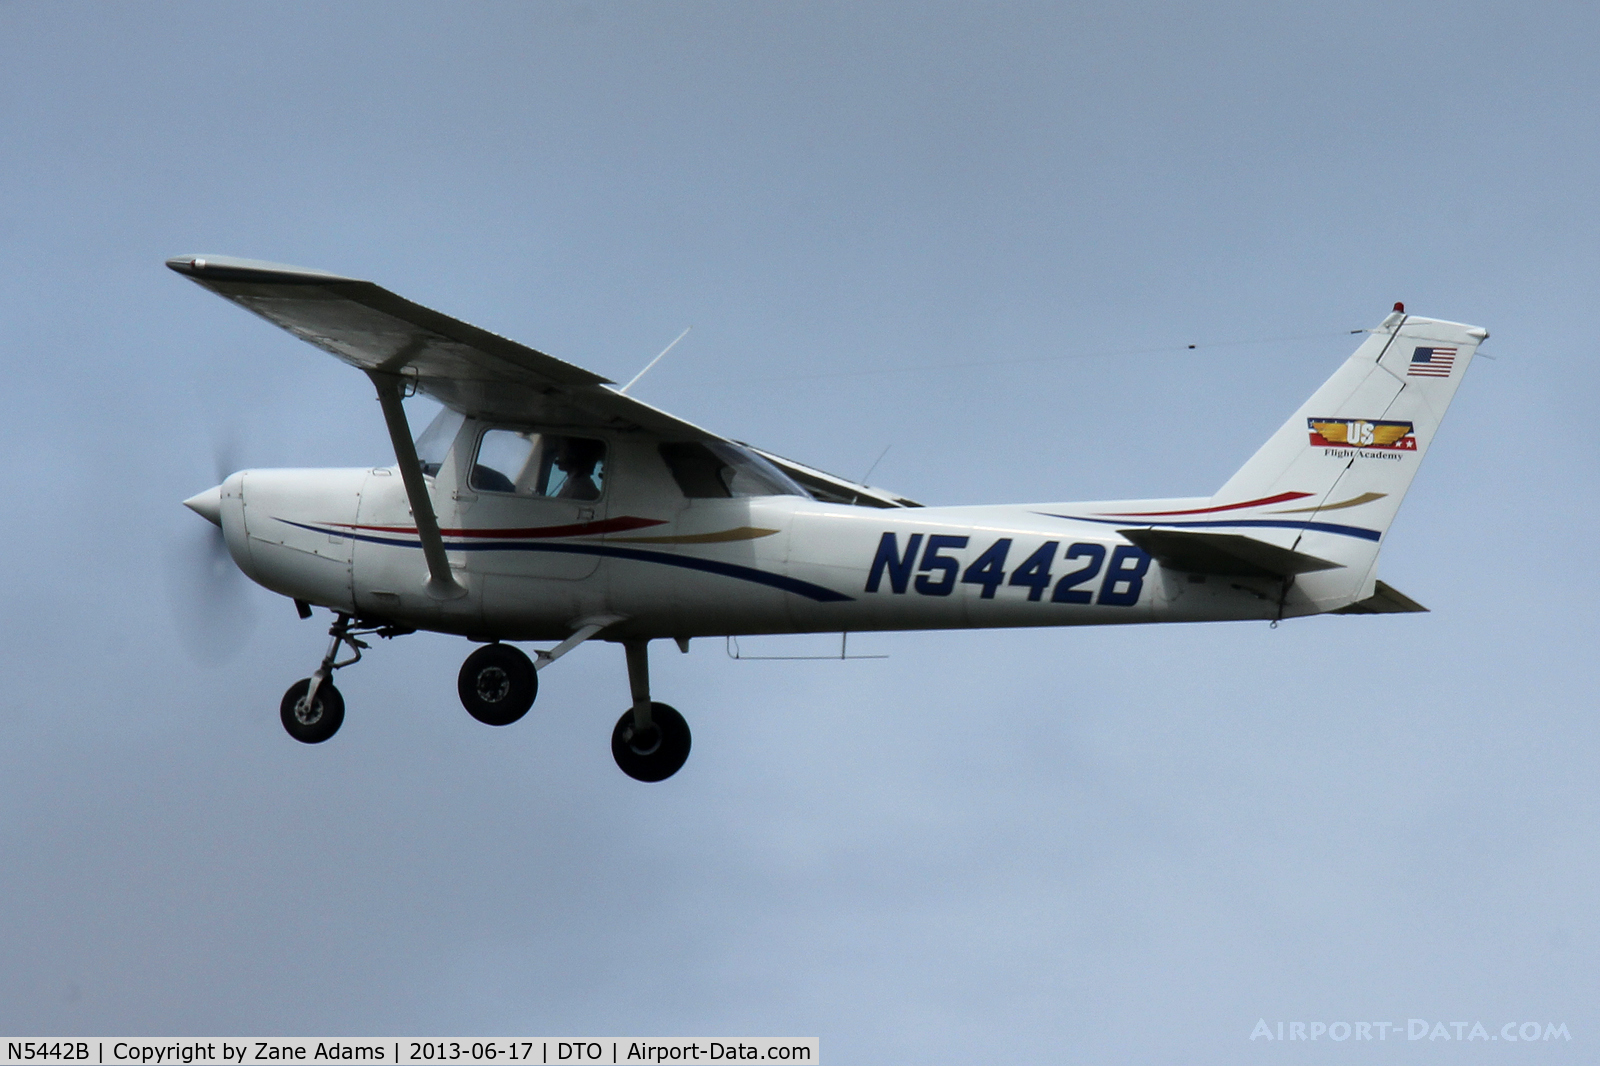 N5442B, 1979 Cessna 152 C/N 15283870, At Denton Municipal